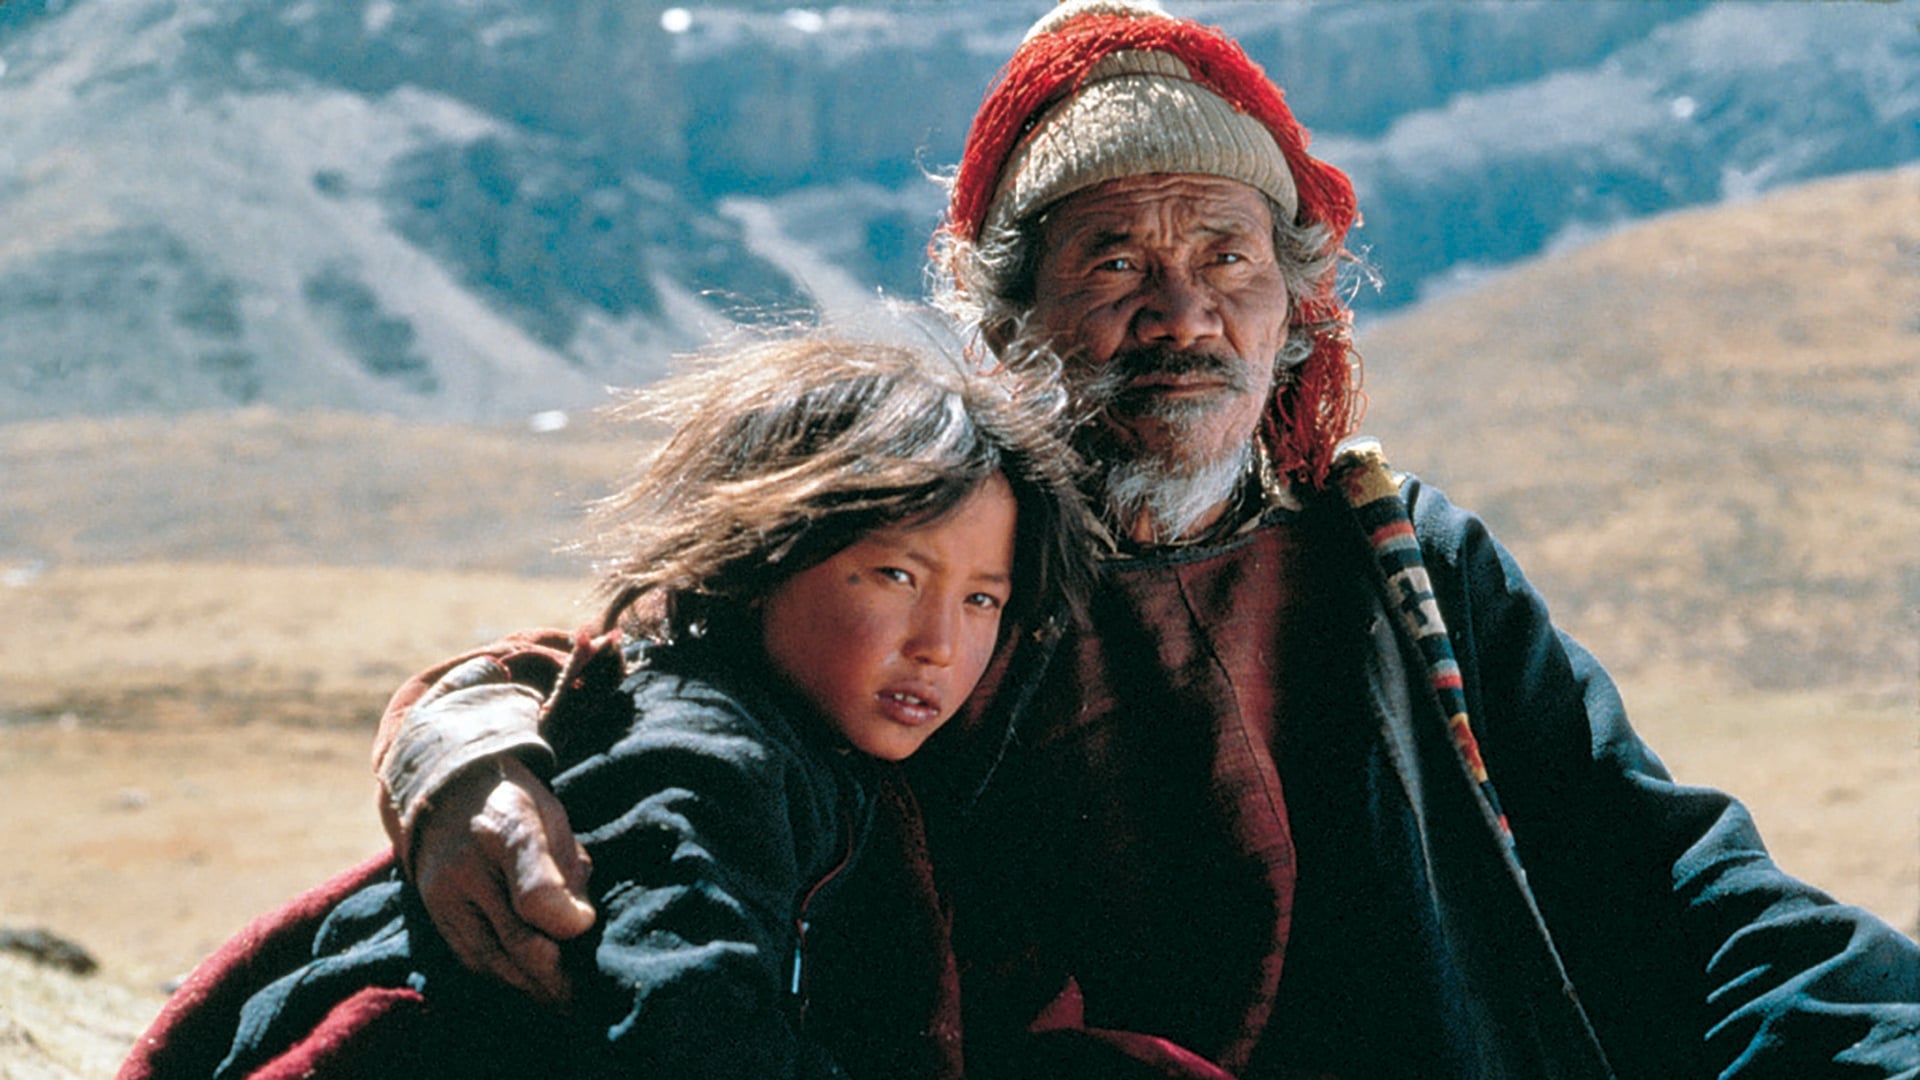 Himalaya – L’infanzia di un capo